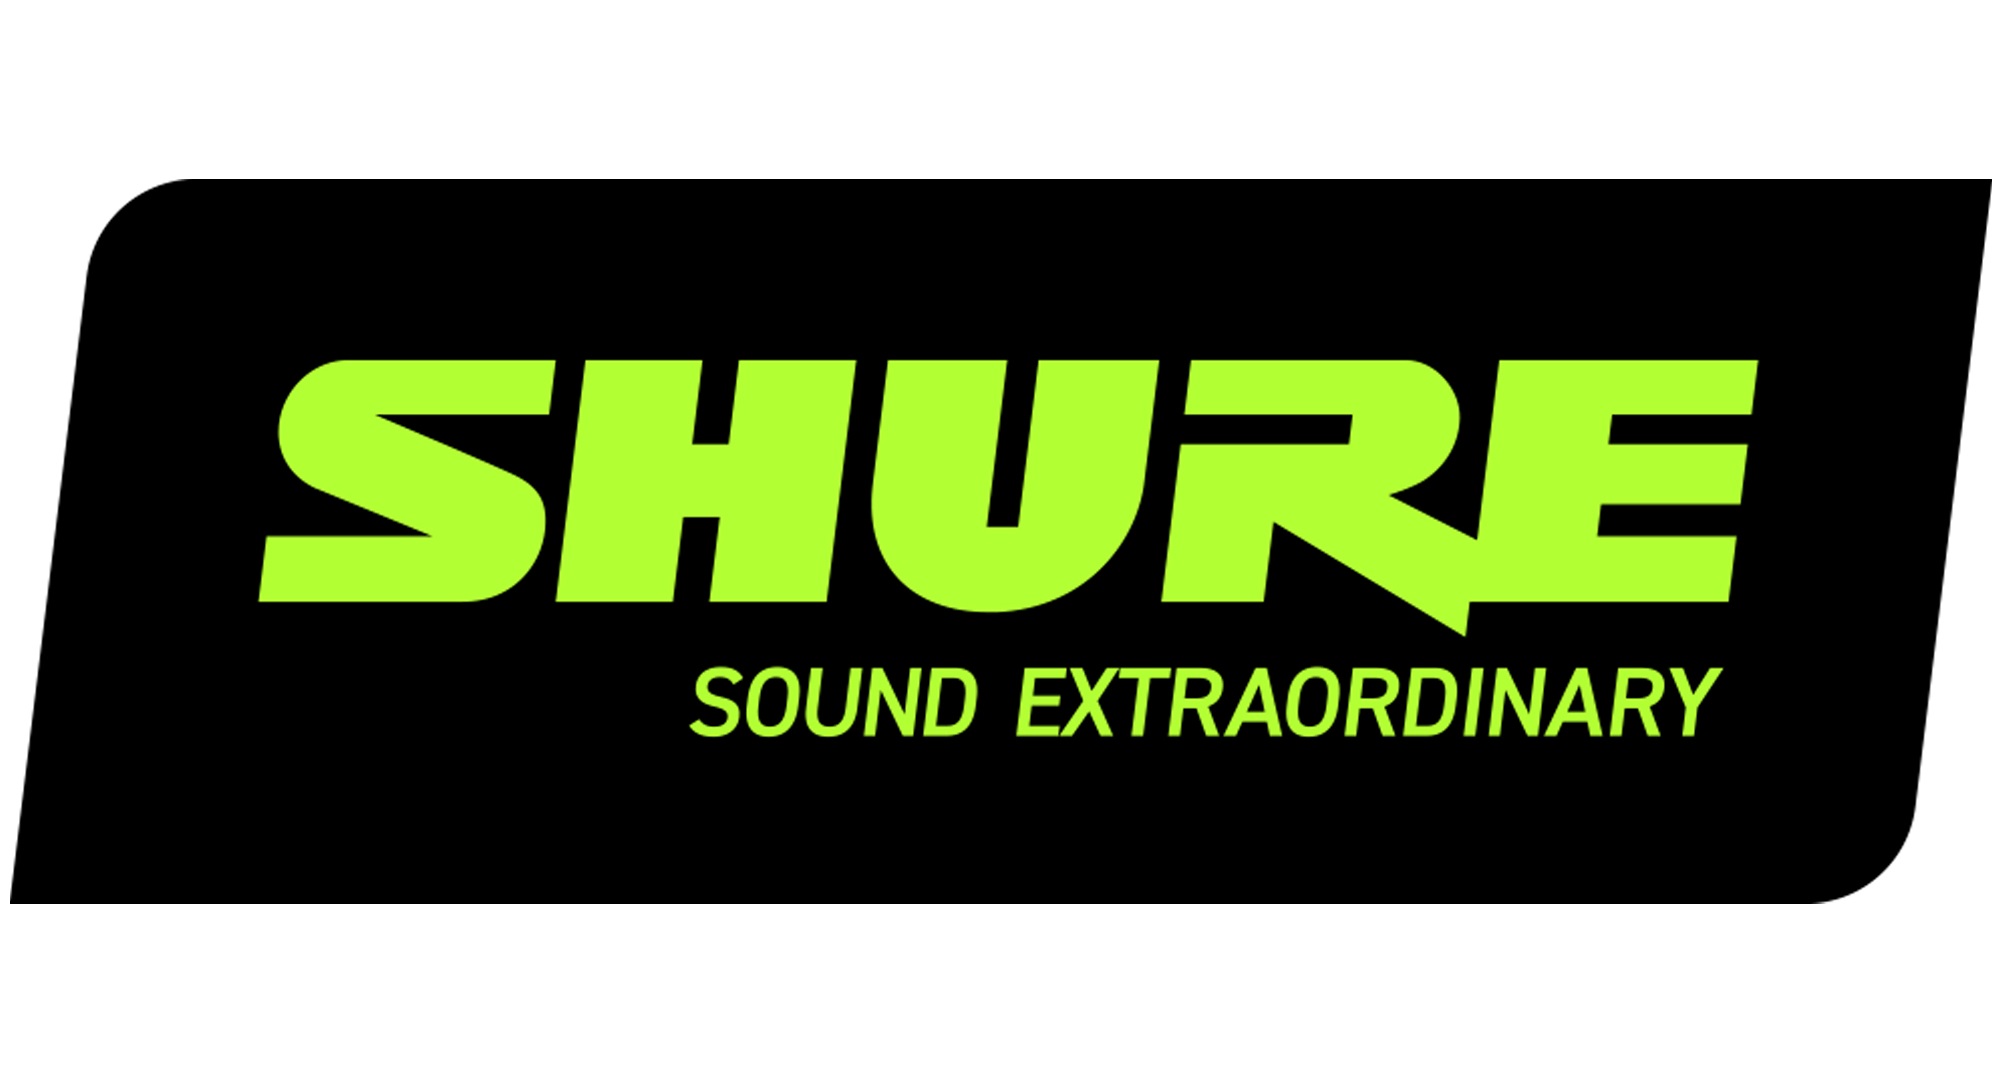 عرب هاردوير - شركة Shure تكشف عن حملتها الإعلانية لإطلاق سماعاتها اللاسلكية  الجديدة